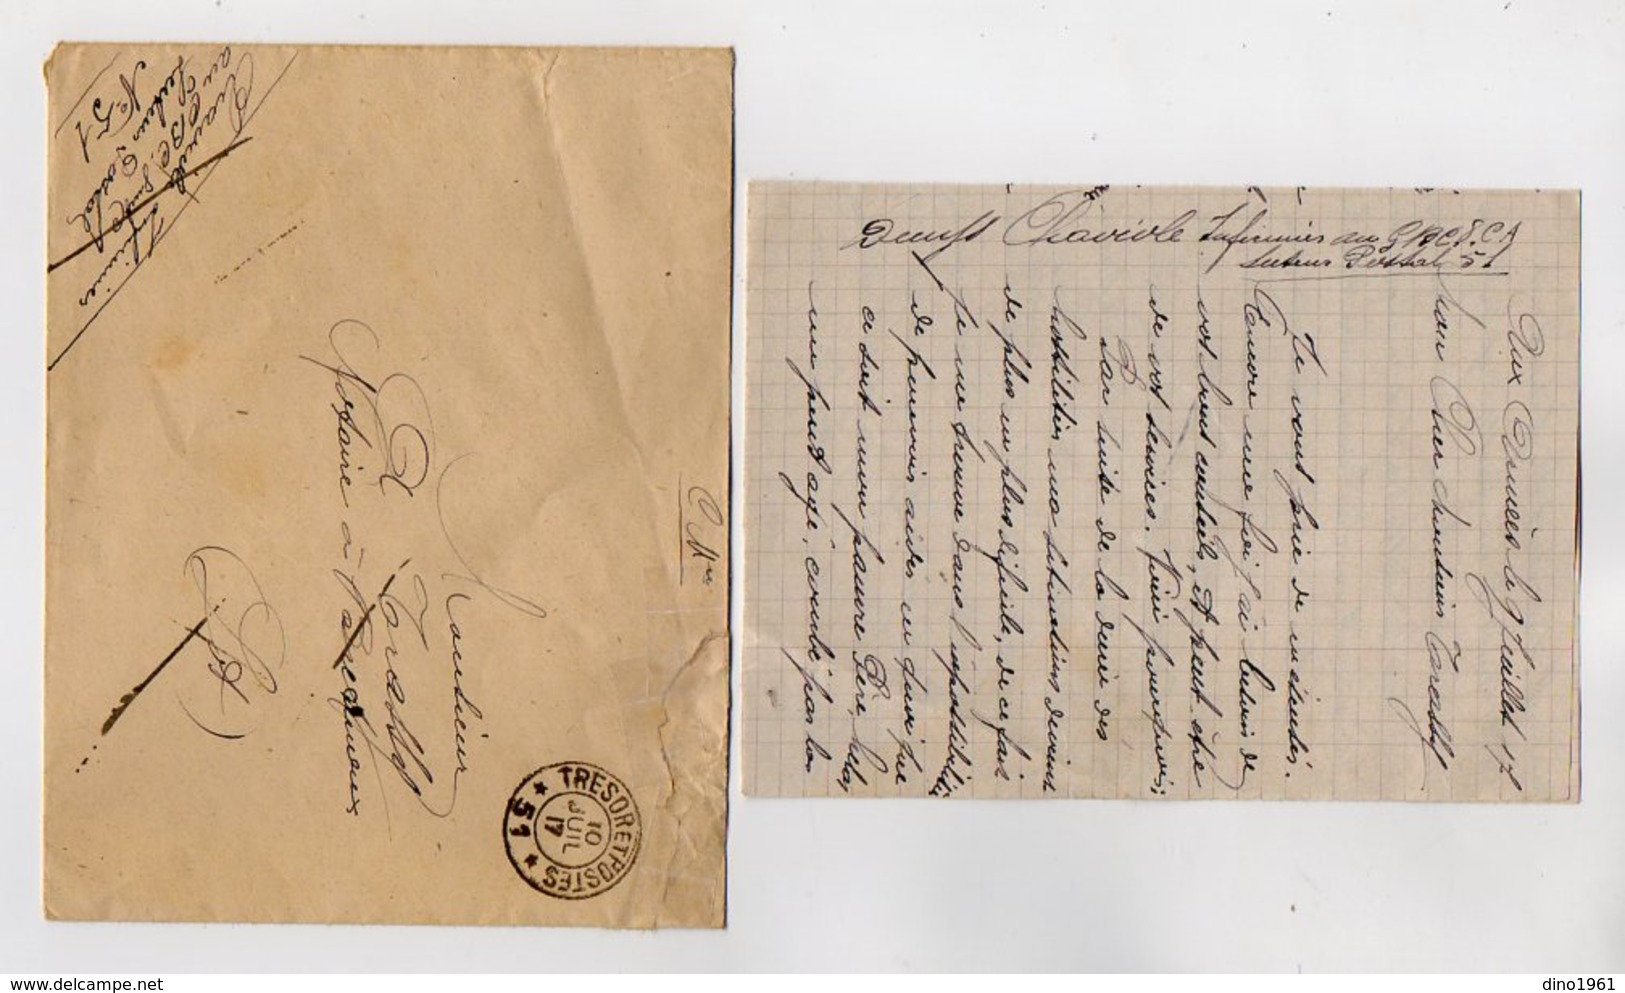 VP16.892 - MILITARIA - 1917 - Lettre Du Soldat CHAVIOLE Infirmier Au G.B.C .....Secteur Postal 51 - Documenti